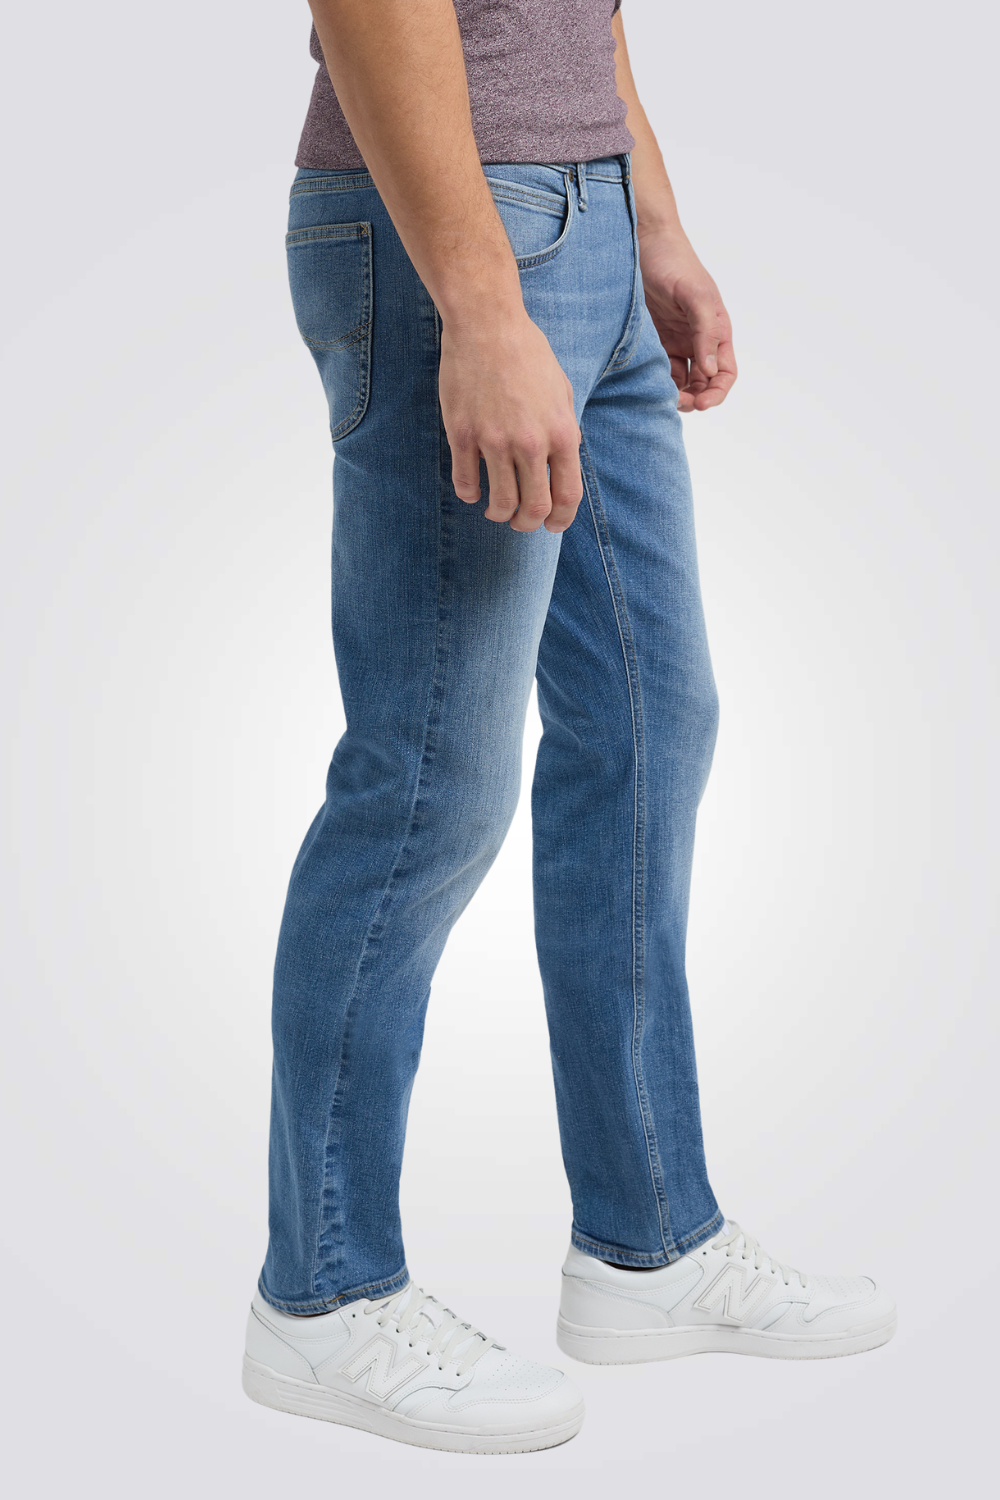 ג'ינס לגברים בצבע כחול 